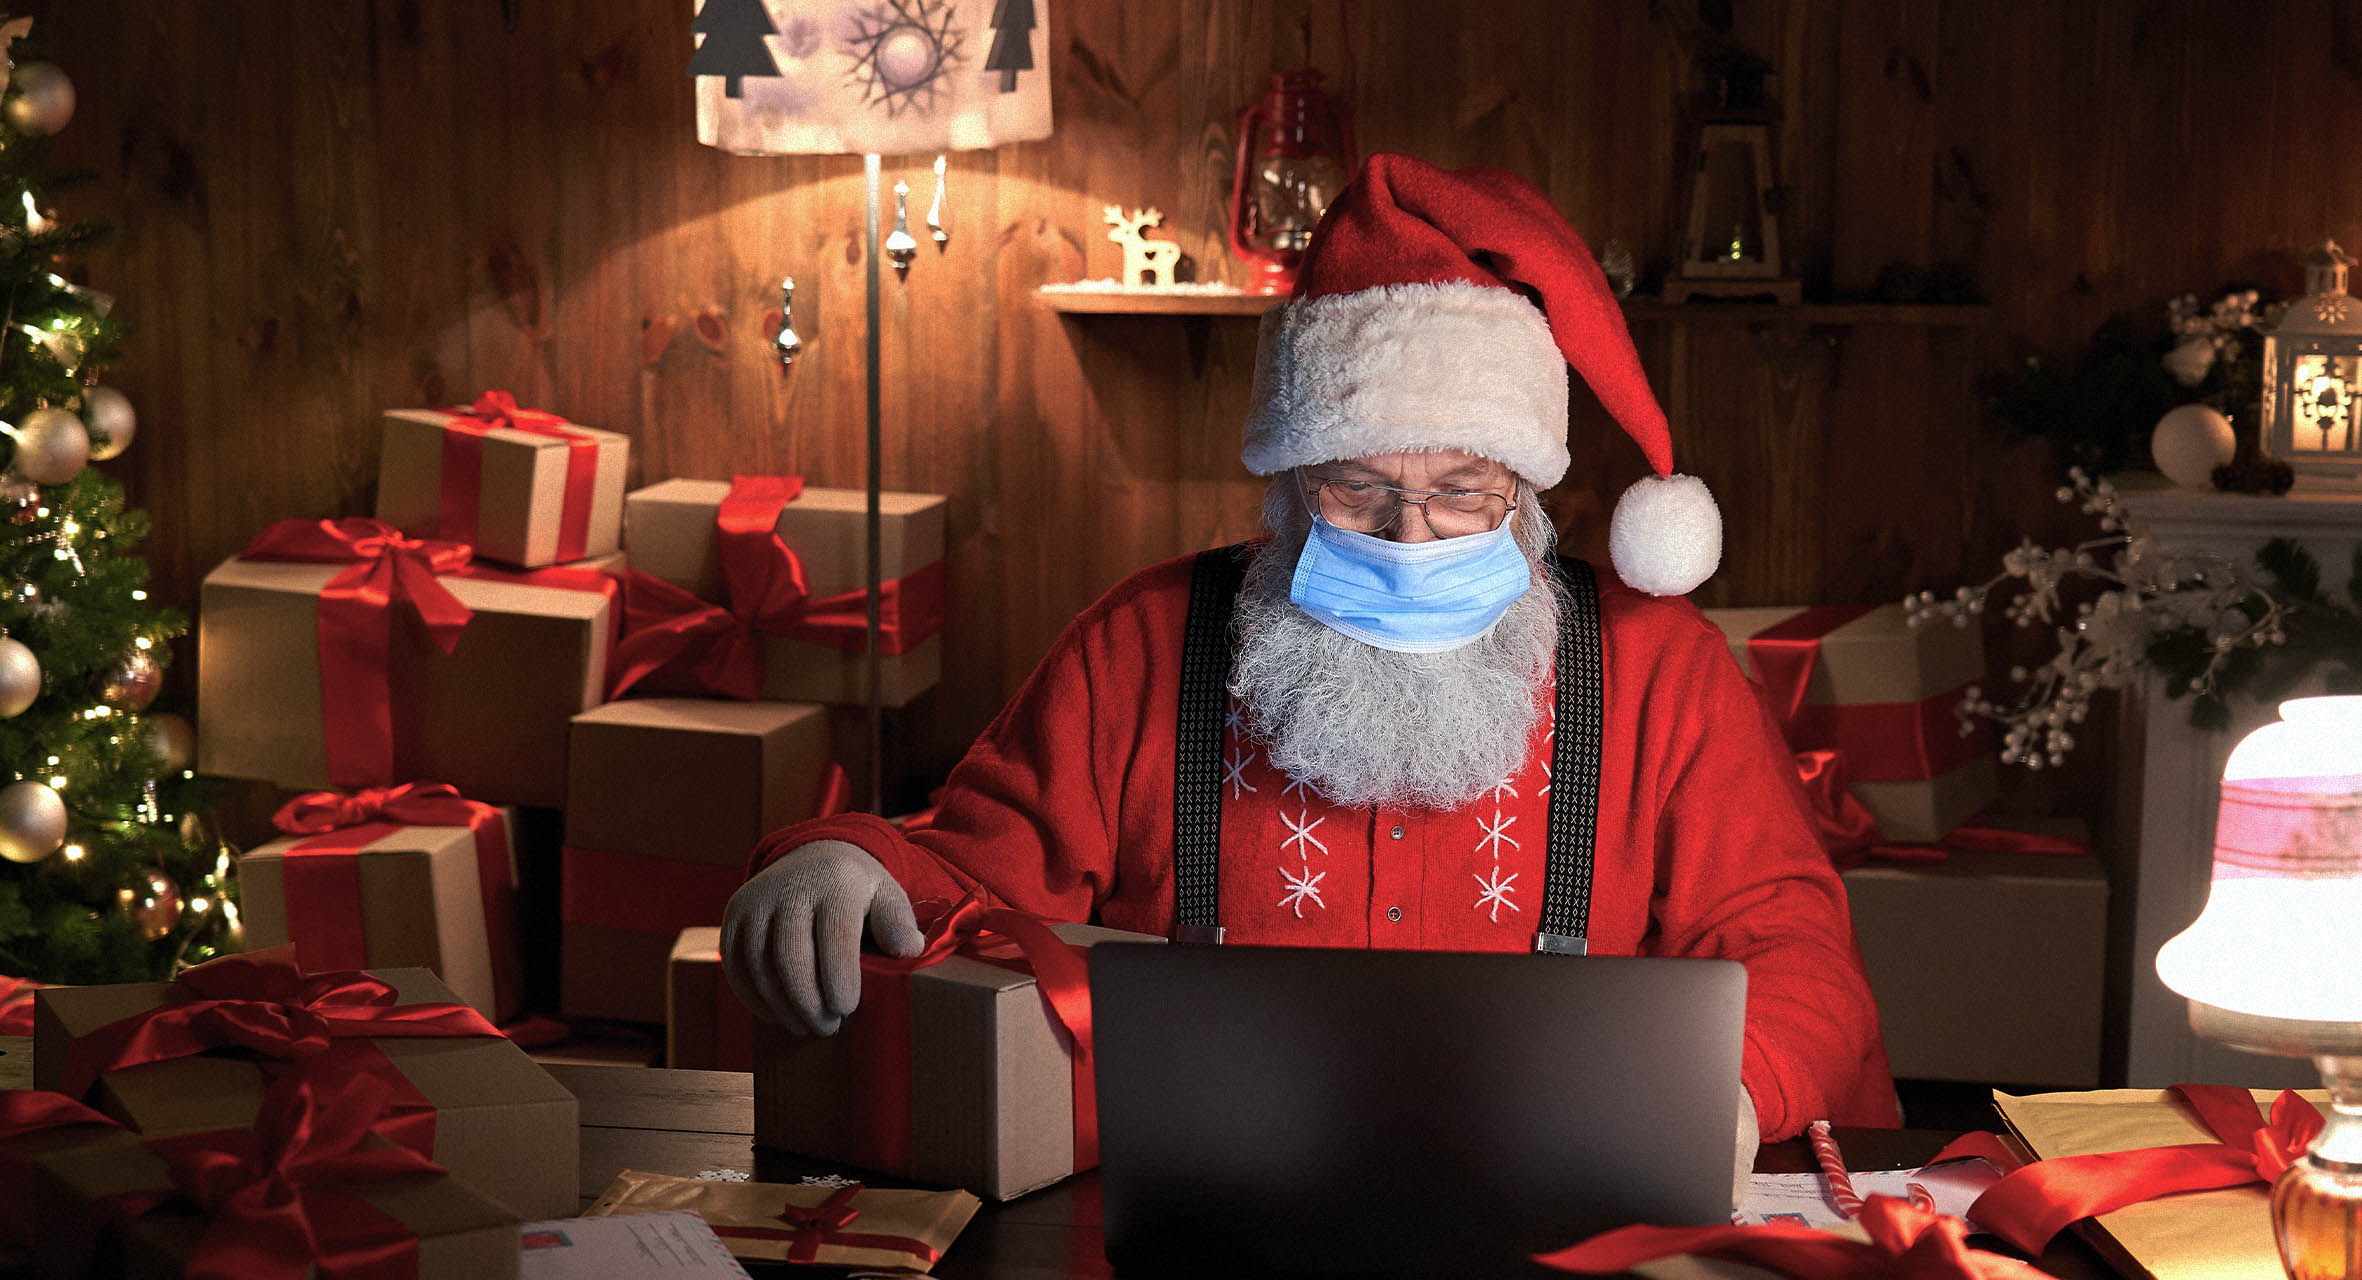 صورة بابا نويل يرجح استمرار توزيع الهدايا حتى إبريل ۲۰۲۱ بسبب قواعد الحجر